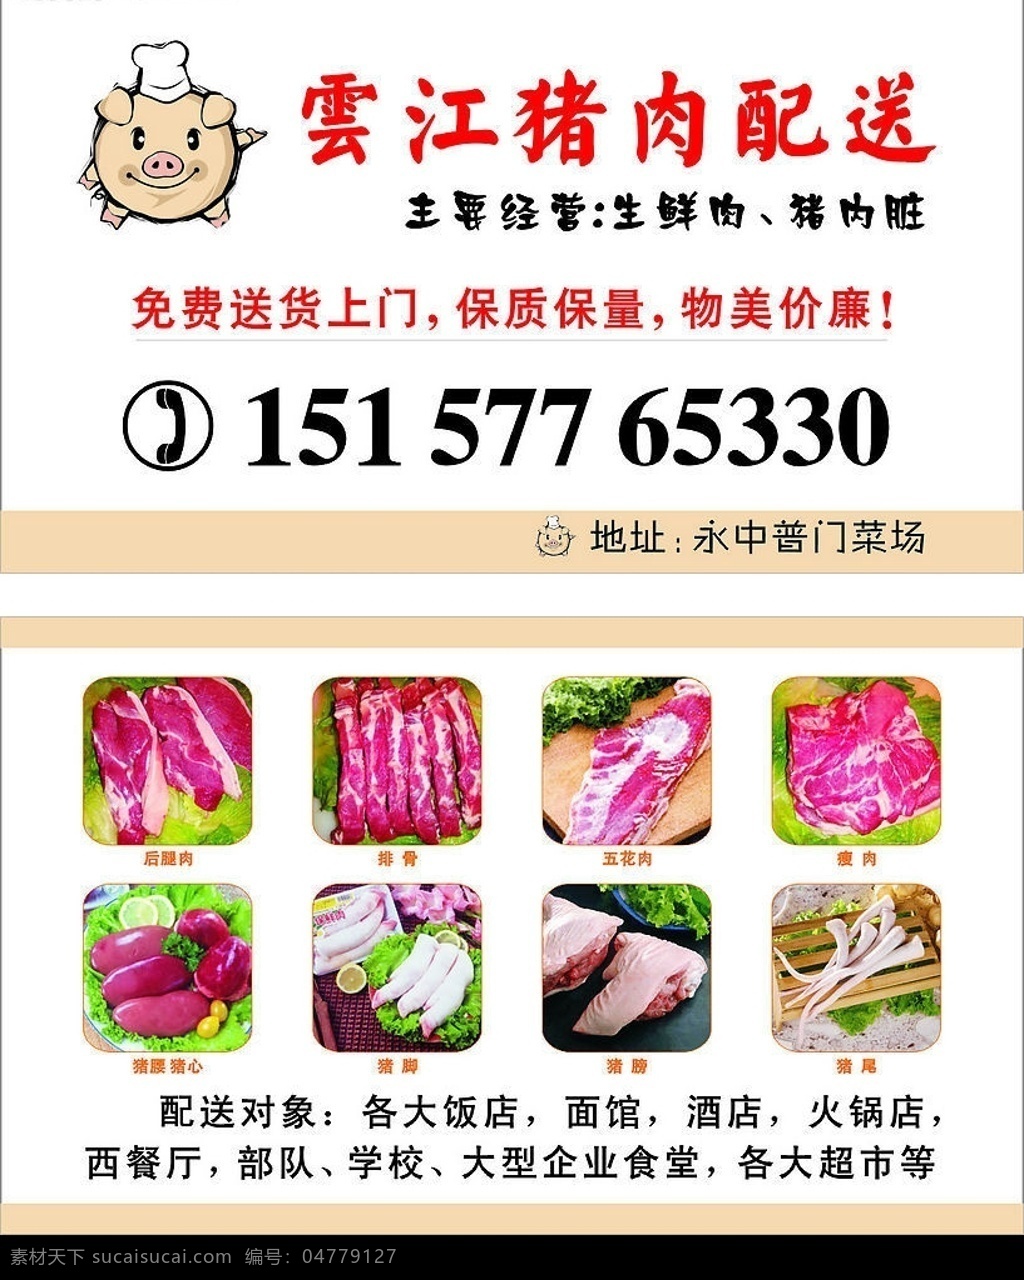 云江 猪肉 配送 店 猪 可爱的猪 卖猪肉名片 名片 彩印 猪尾 猪蹄 猪腰 猪心 名片卡片 矢量图库